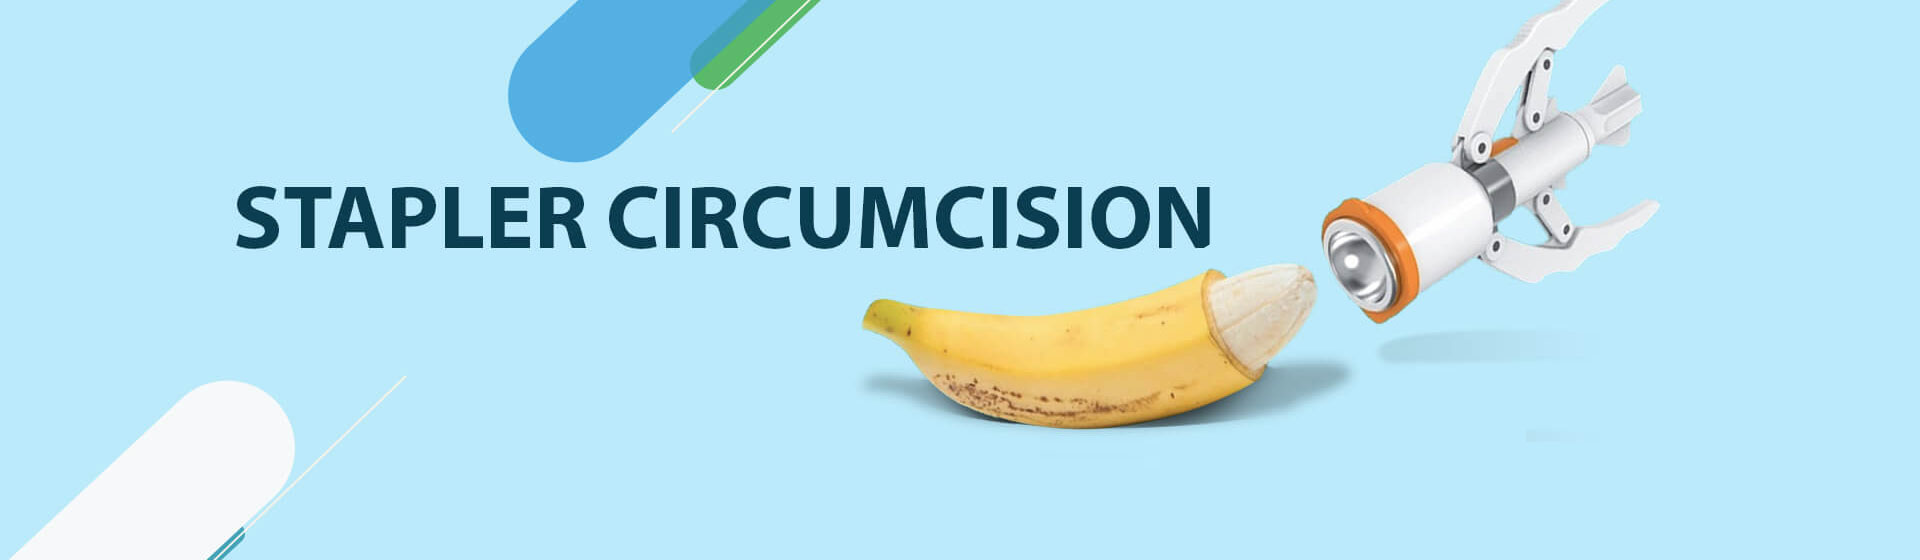 stapler circumcision 